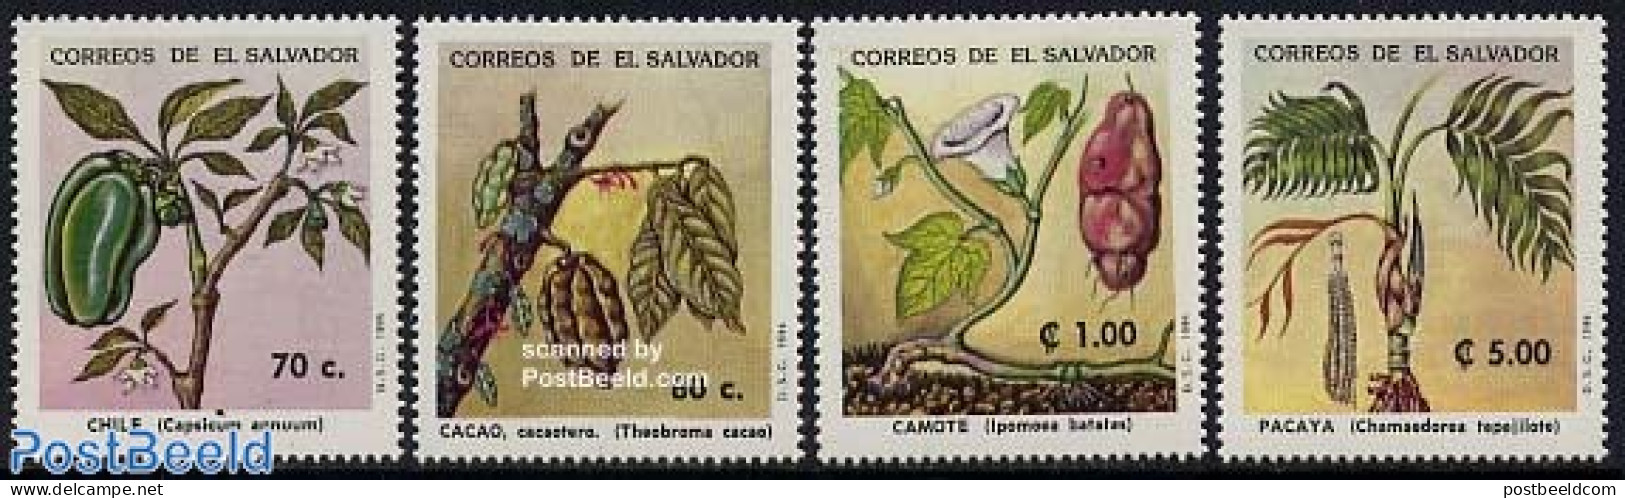 El Salvador 1994 Usefull Plants 4v, Mint NH, Nature - Flowers & Plants - Salvador